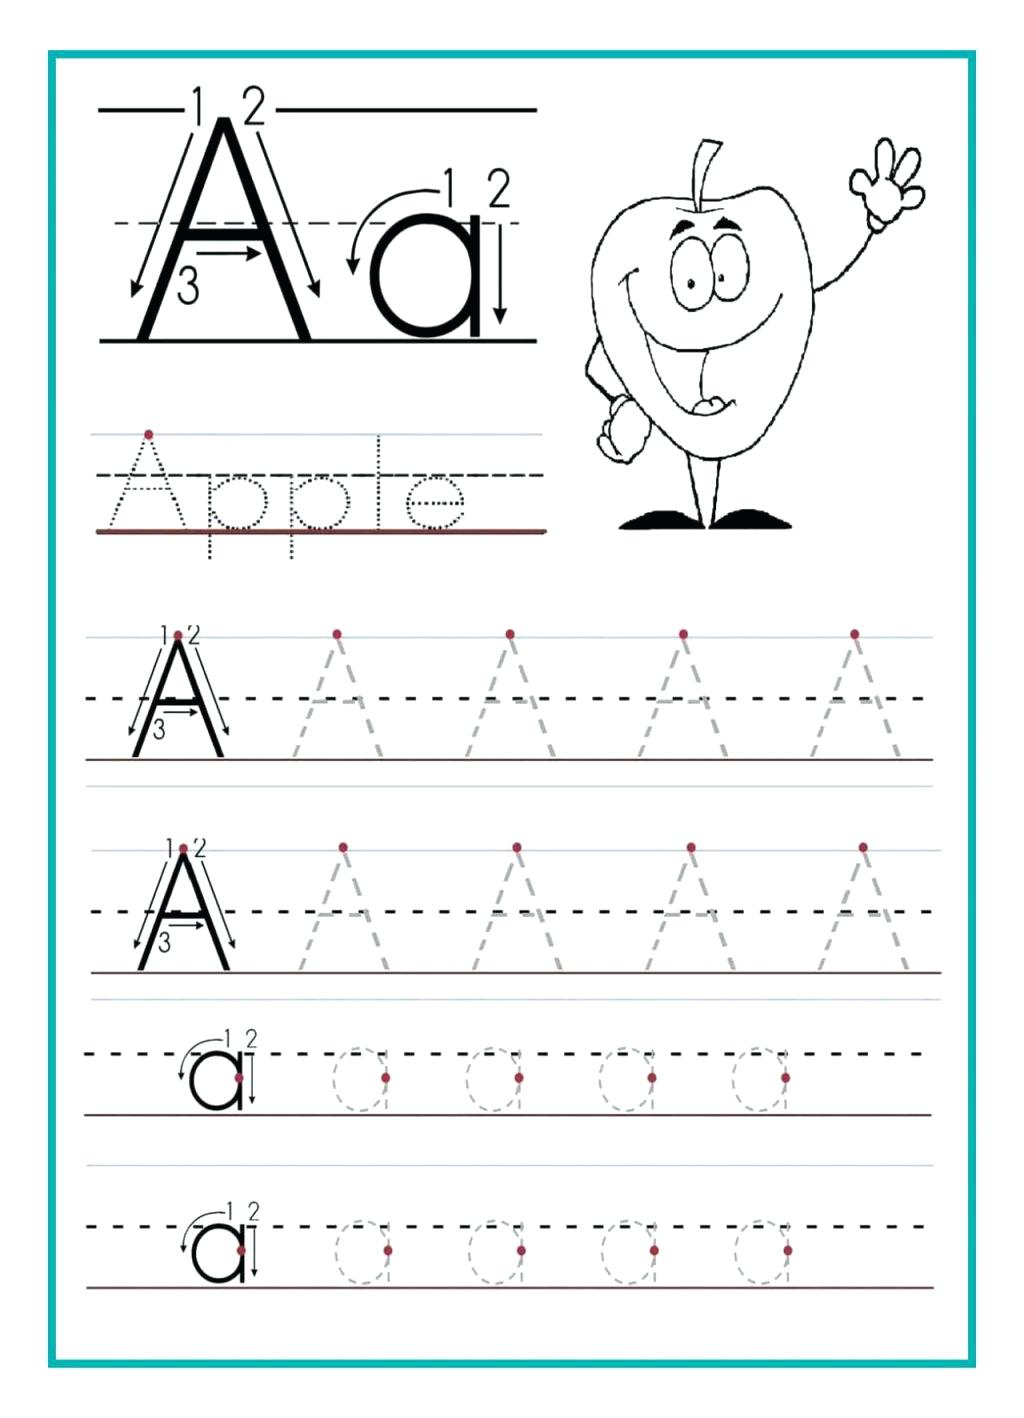 sentence-tracing-worksheets-alphabetworksheetsfreecom-abcd-tracing